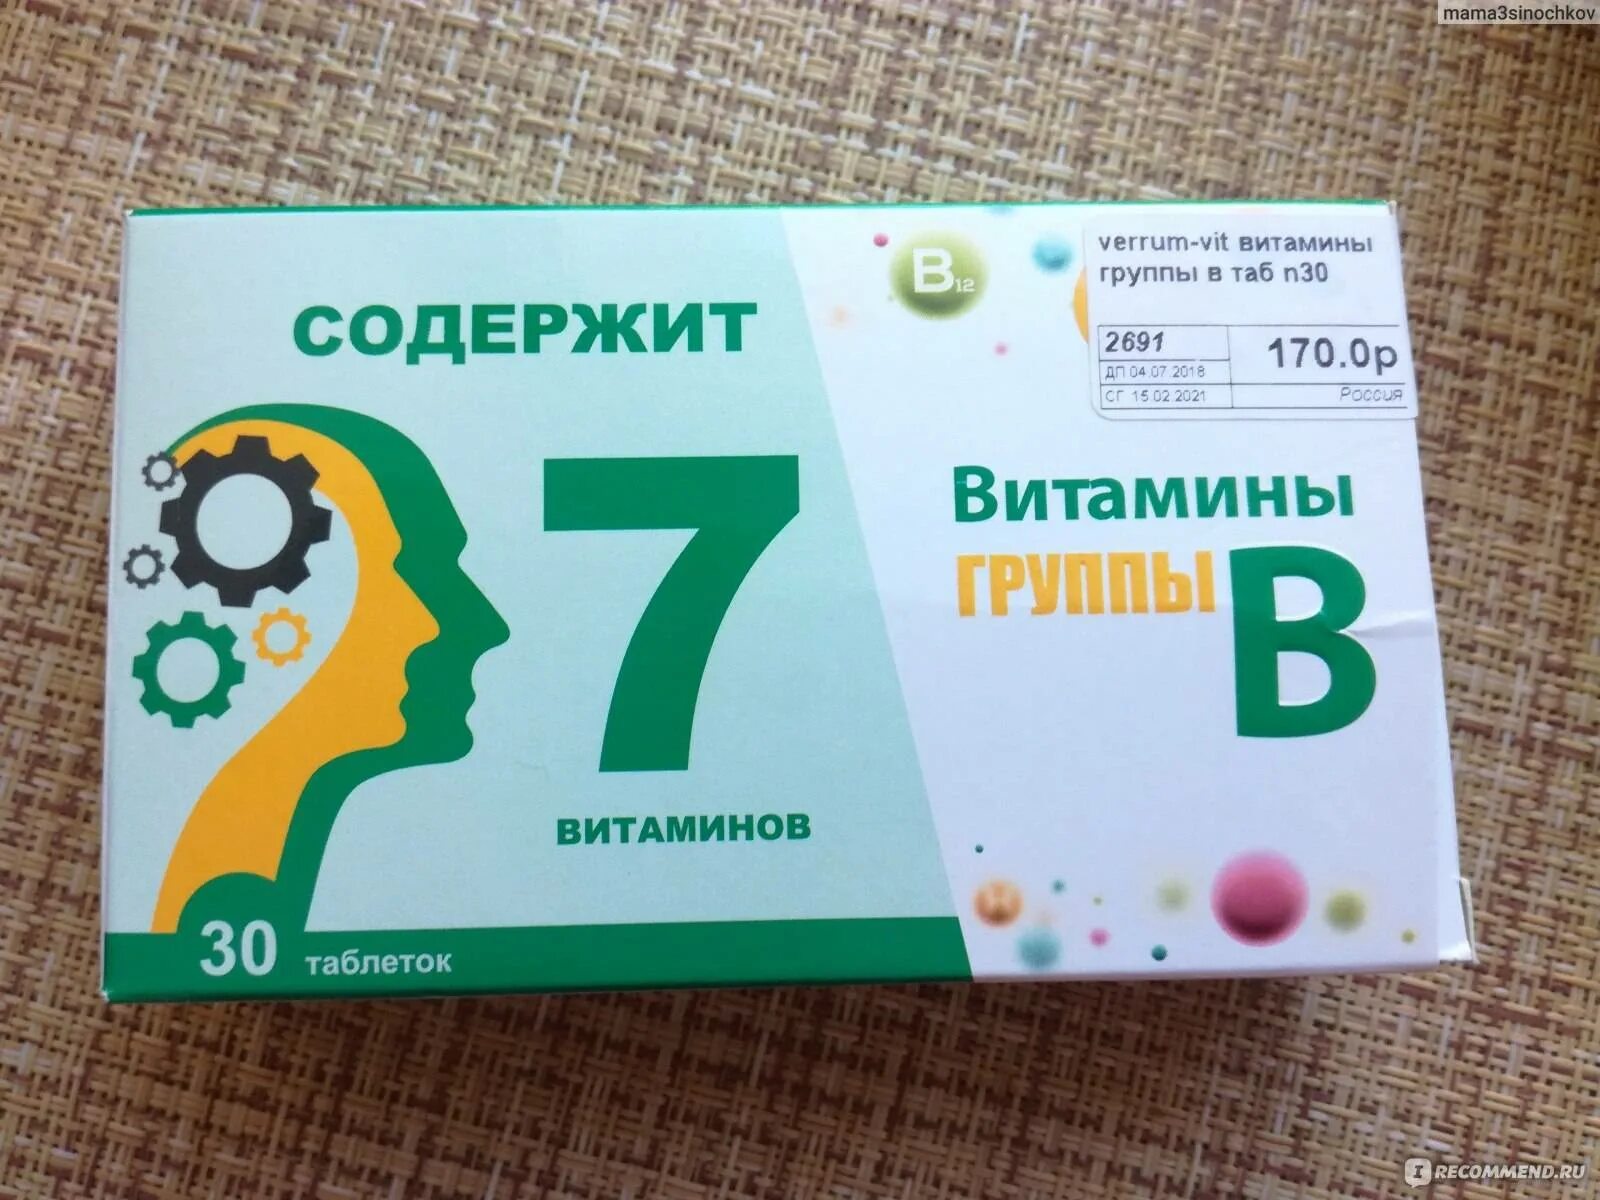 Витамины в1 в6 отзывы. Витаминный комплекс в12 в6. Комплекс витаминов в2 в6 в12. Витаминный комплекс в6 в9 в12. Витамины б1 б6 б12 в таблетках.